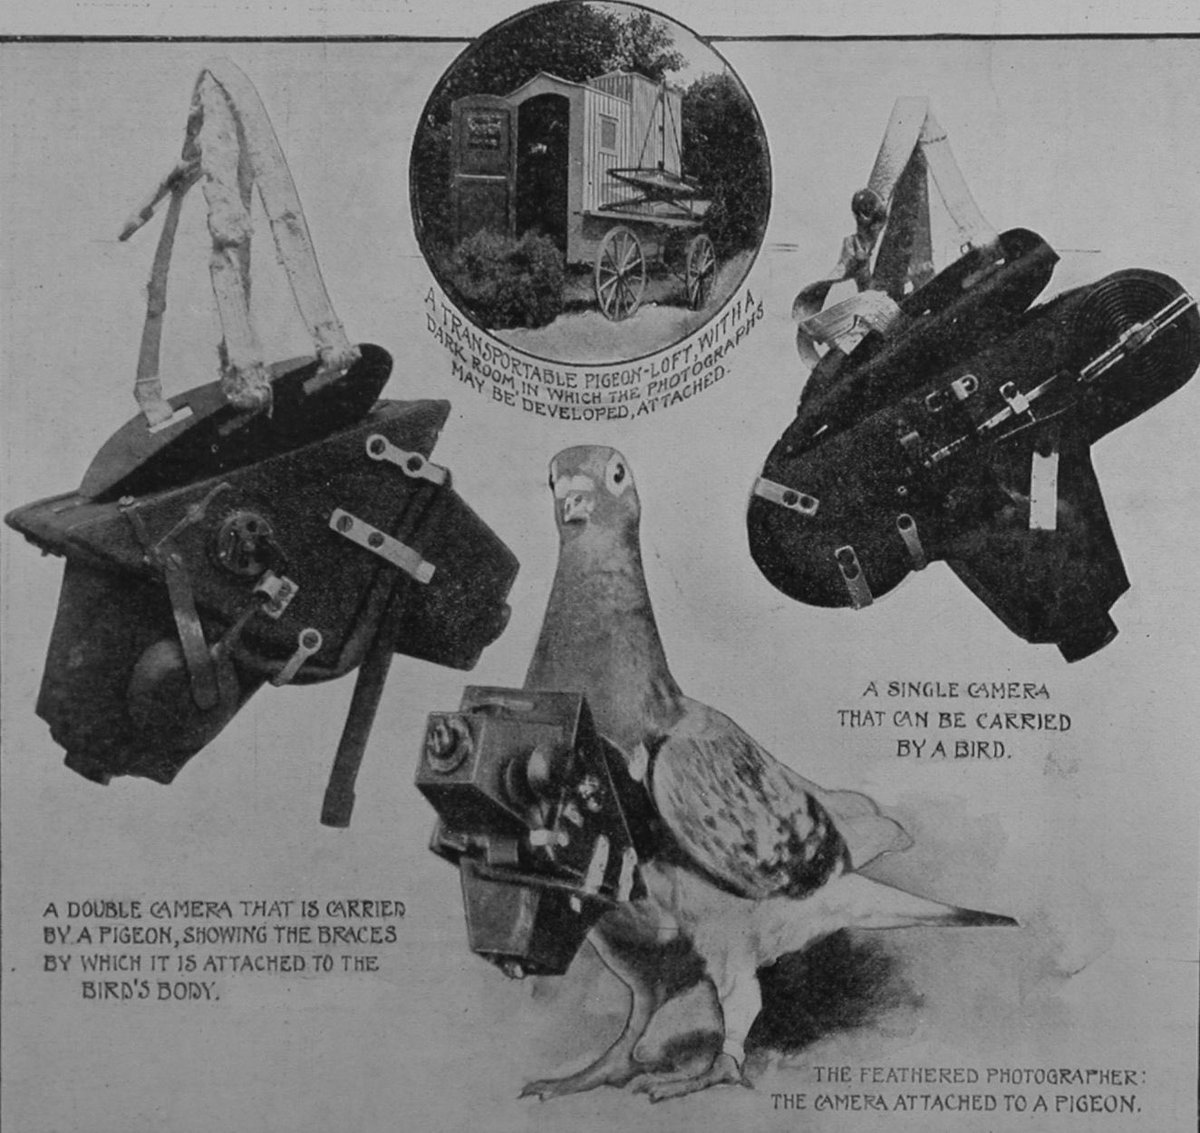 Según sus propias memorias, después de una docena de modelos, creó un aparato de poco más de 40 gramos que podía acoplarse al cuerpo de las aves mediante un arnés y una coraza de aluminio, y que permitía tomar 12 imágenes de 3x6 centímetros